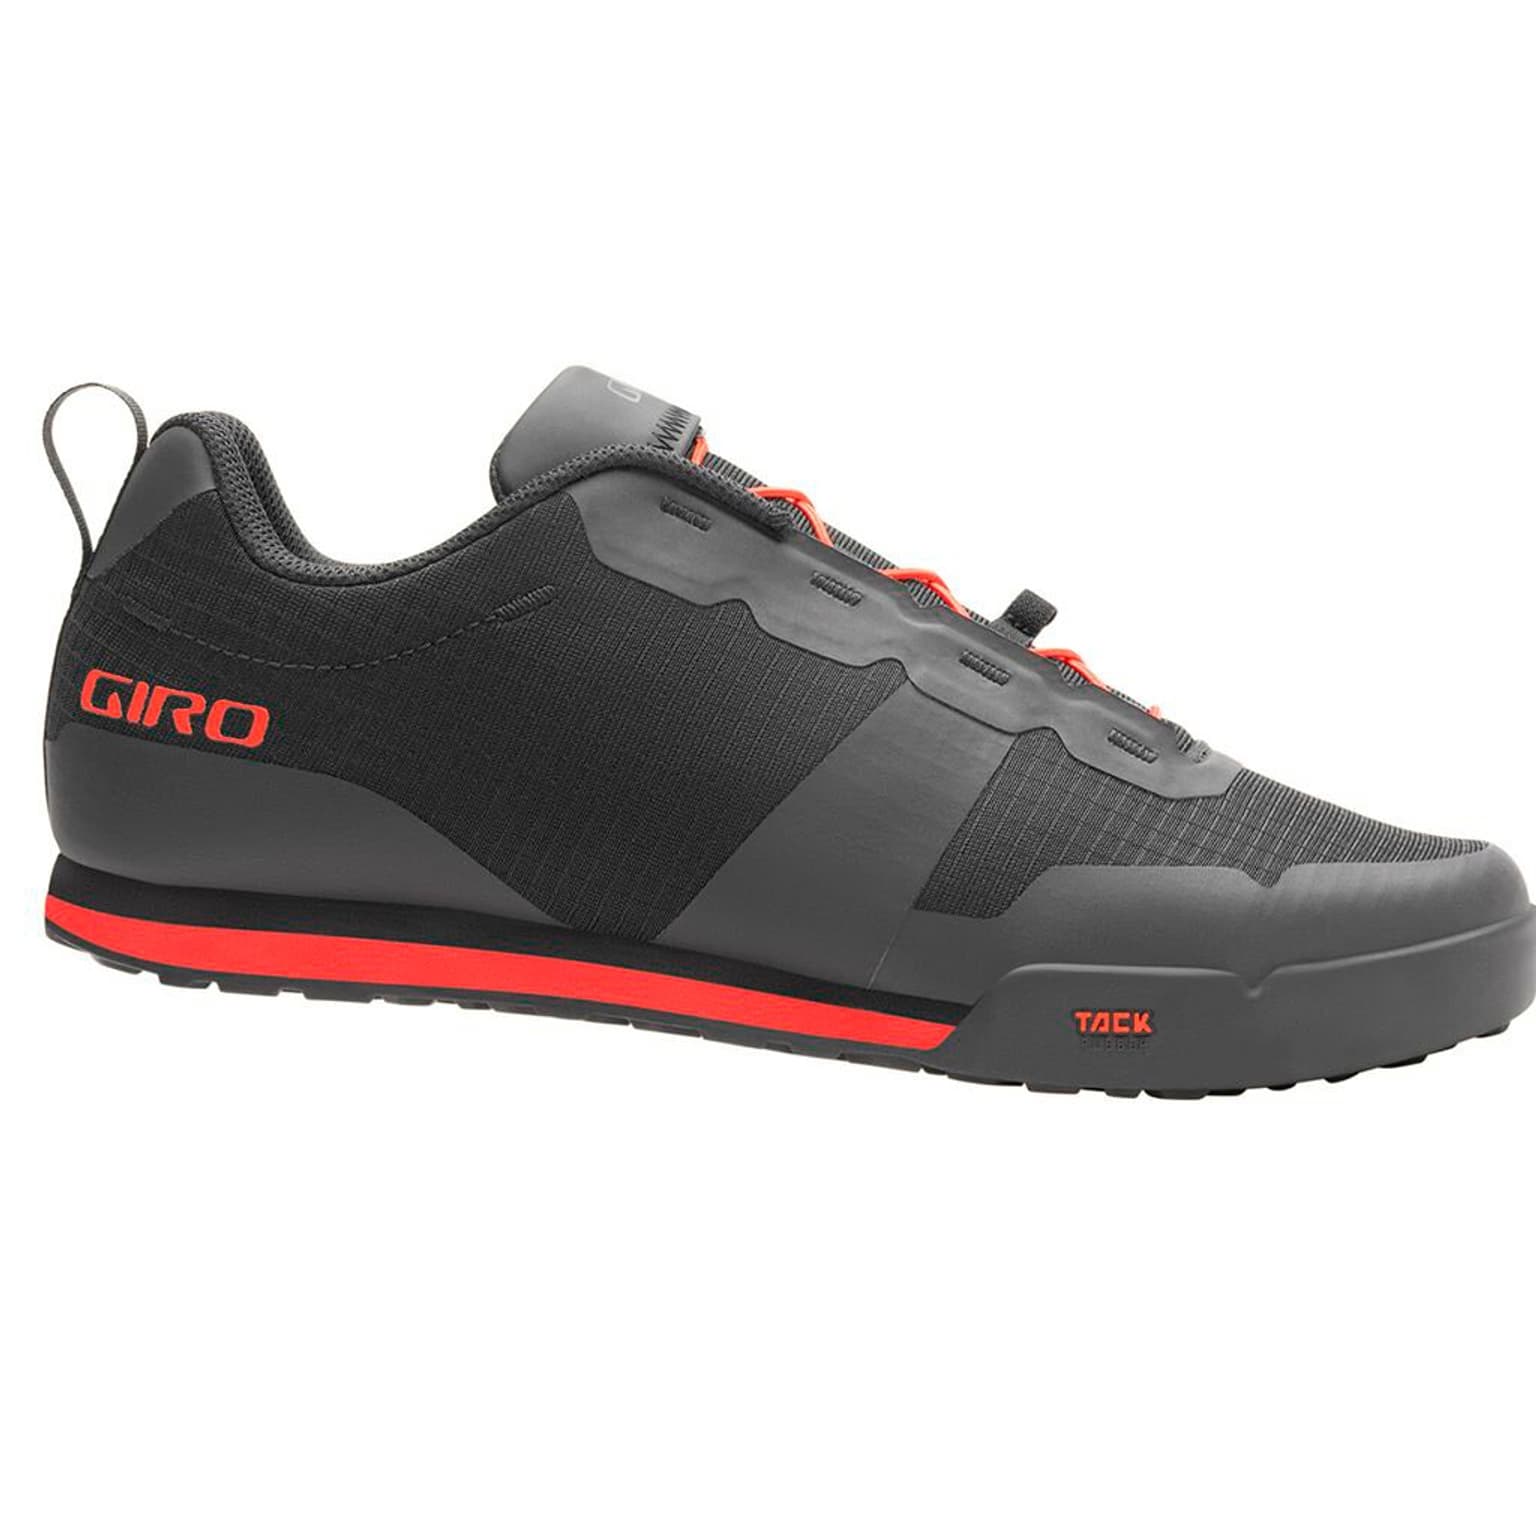 Giro Giro Tracker FL Shoe Chaussures de cyclisme noir 1